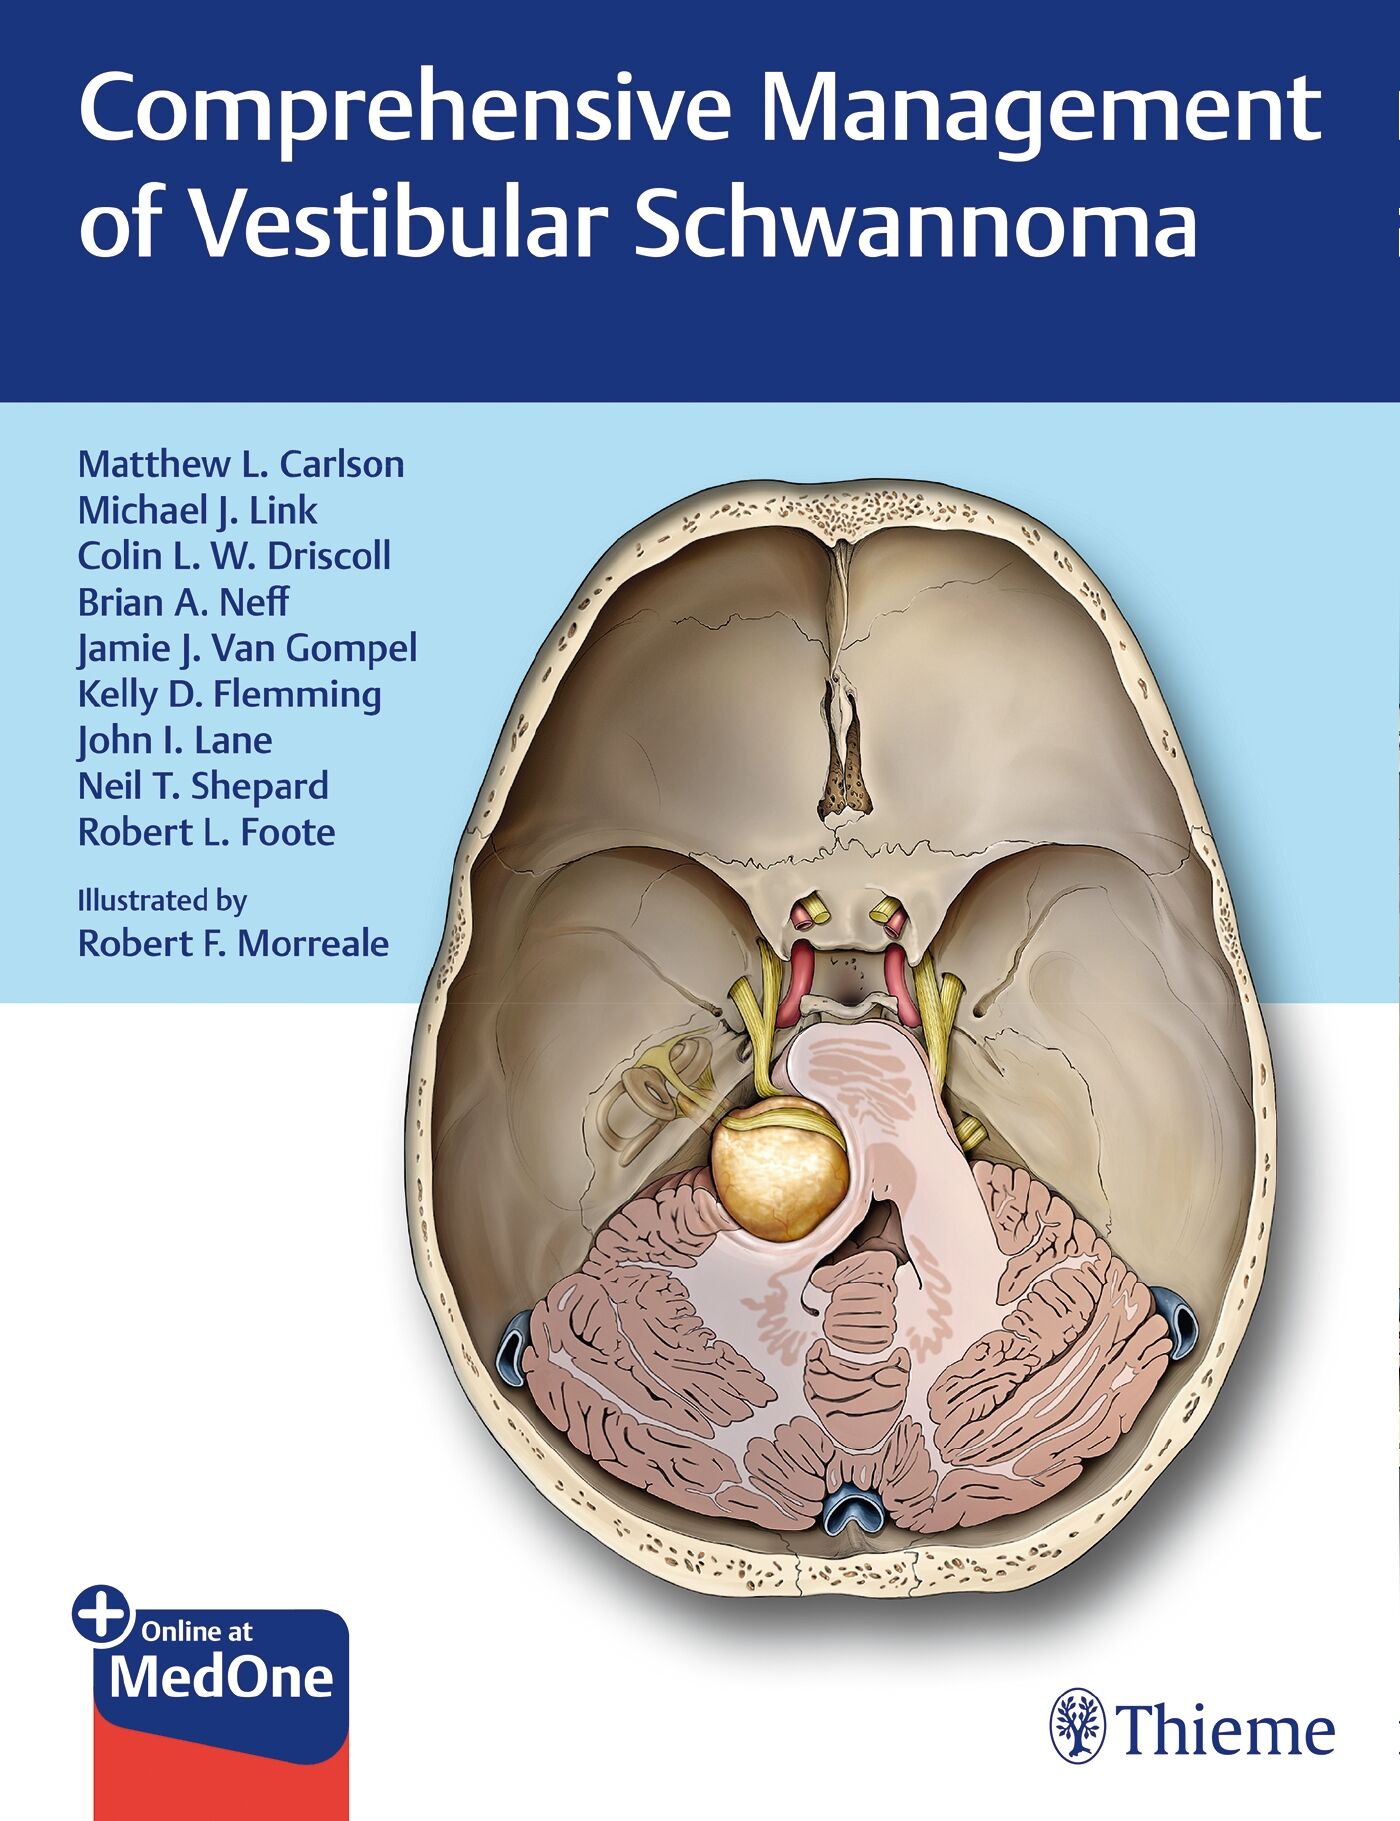 Comprehensive Management of Vestibular Schwannoma, 9781626233317